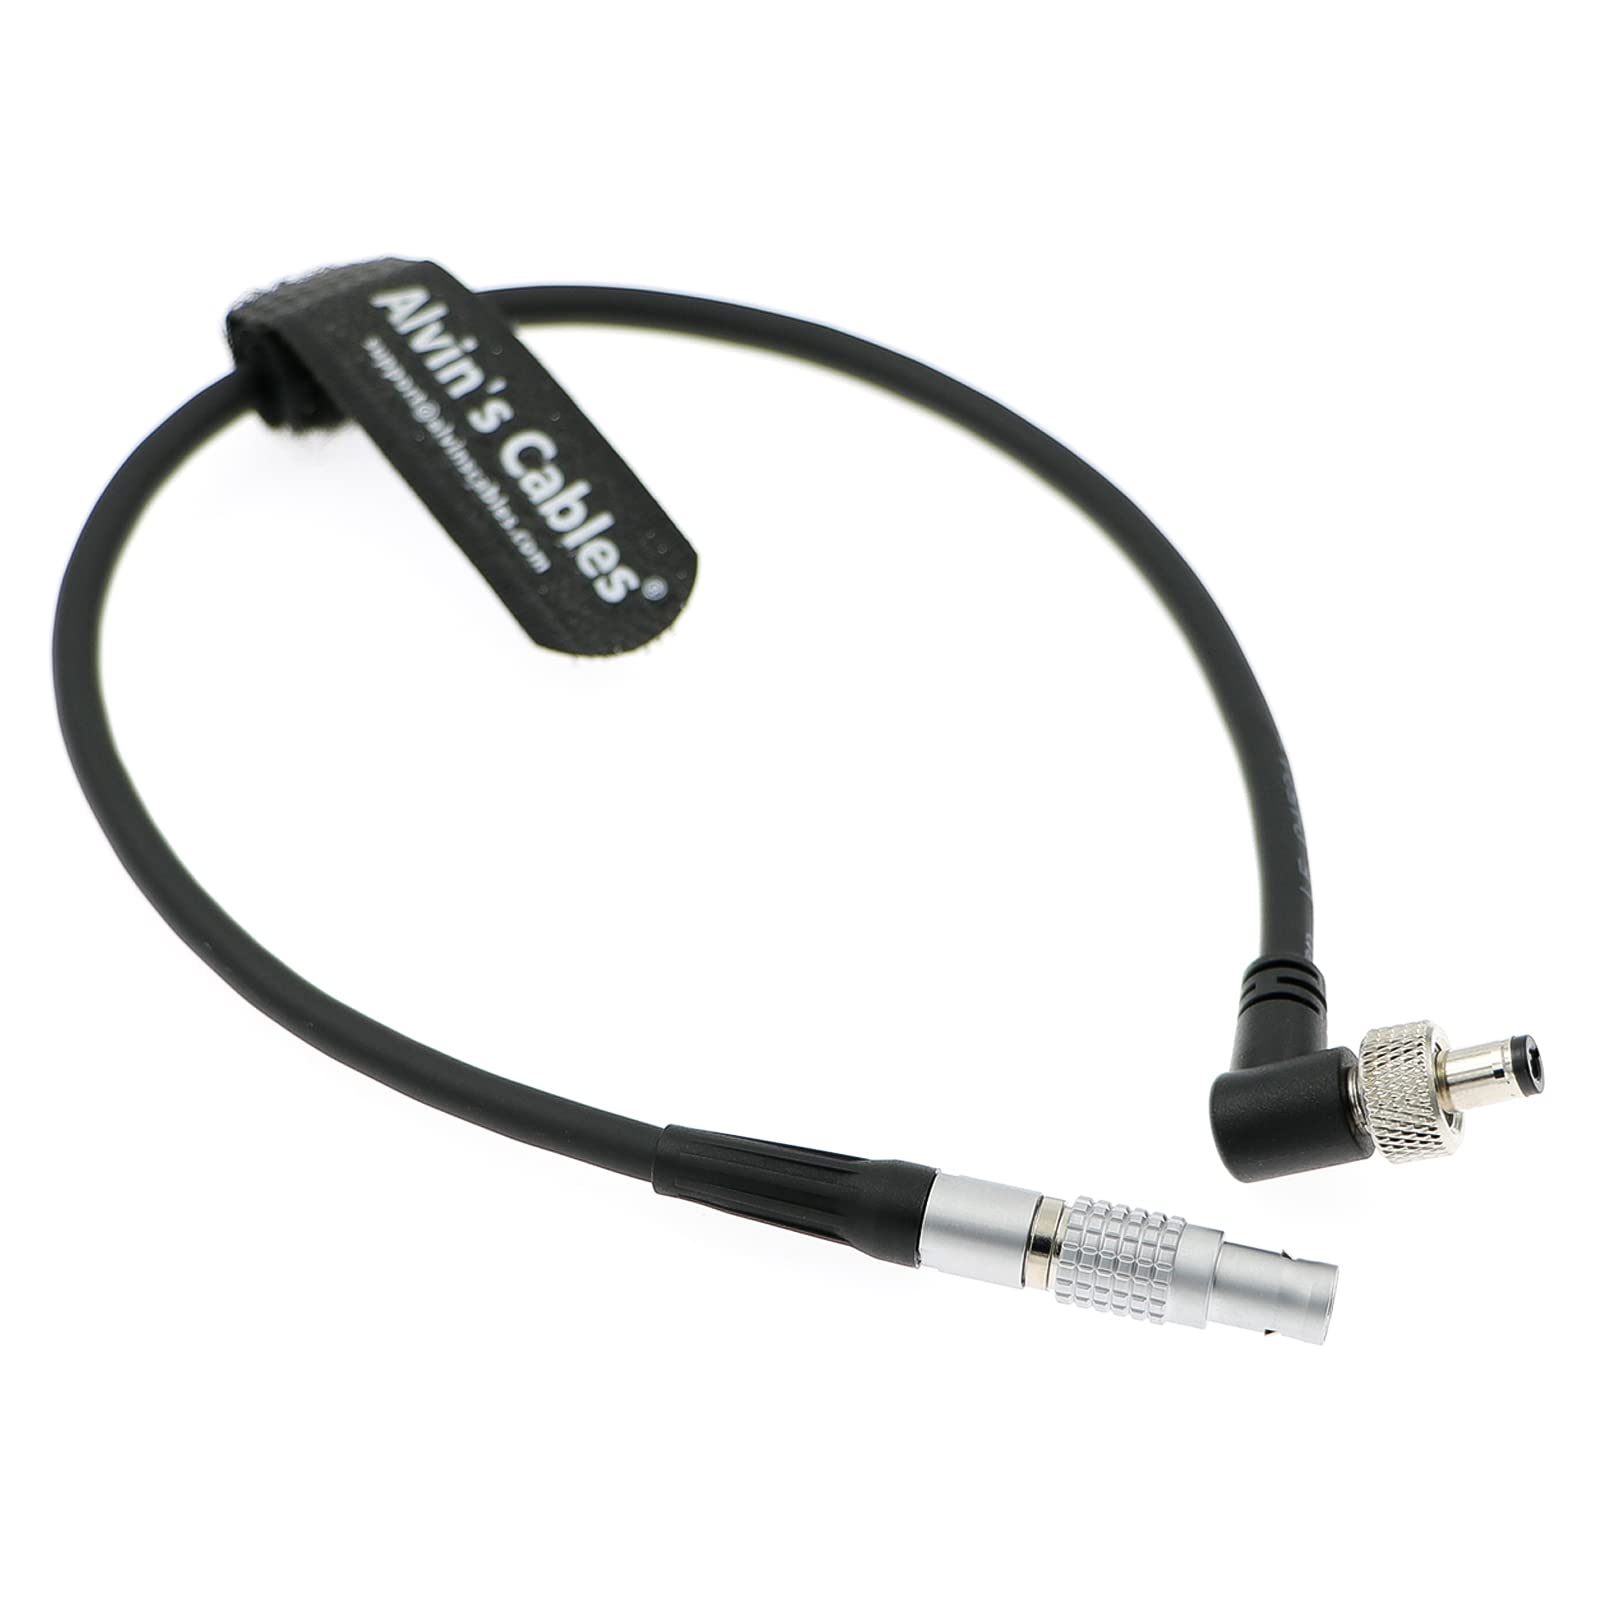 Alvin’s Cables Z-CAM E2 Power Cable for Atomos Ninja V| OSEE G7| Shinobi 7